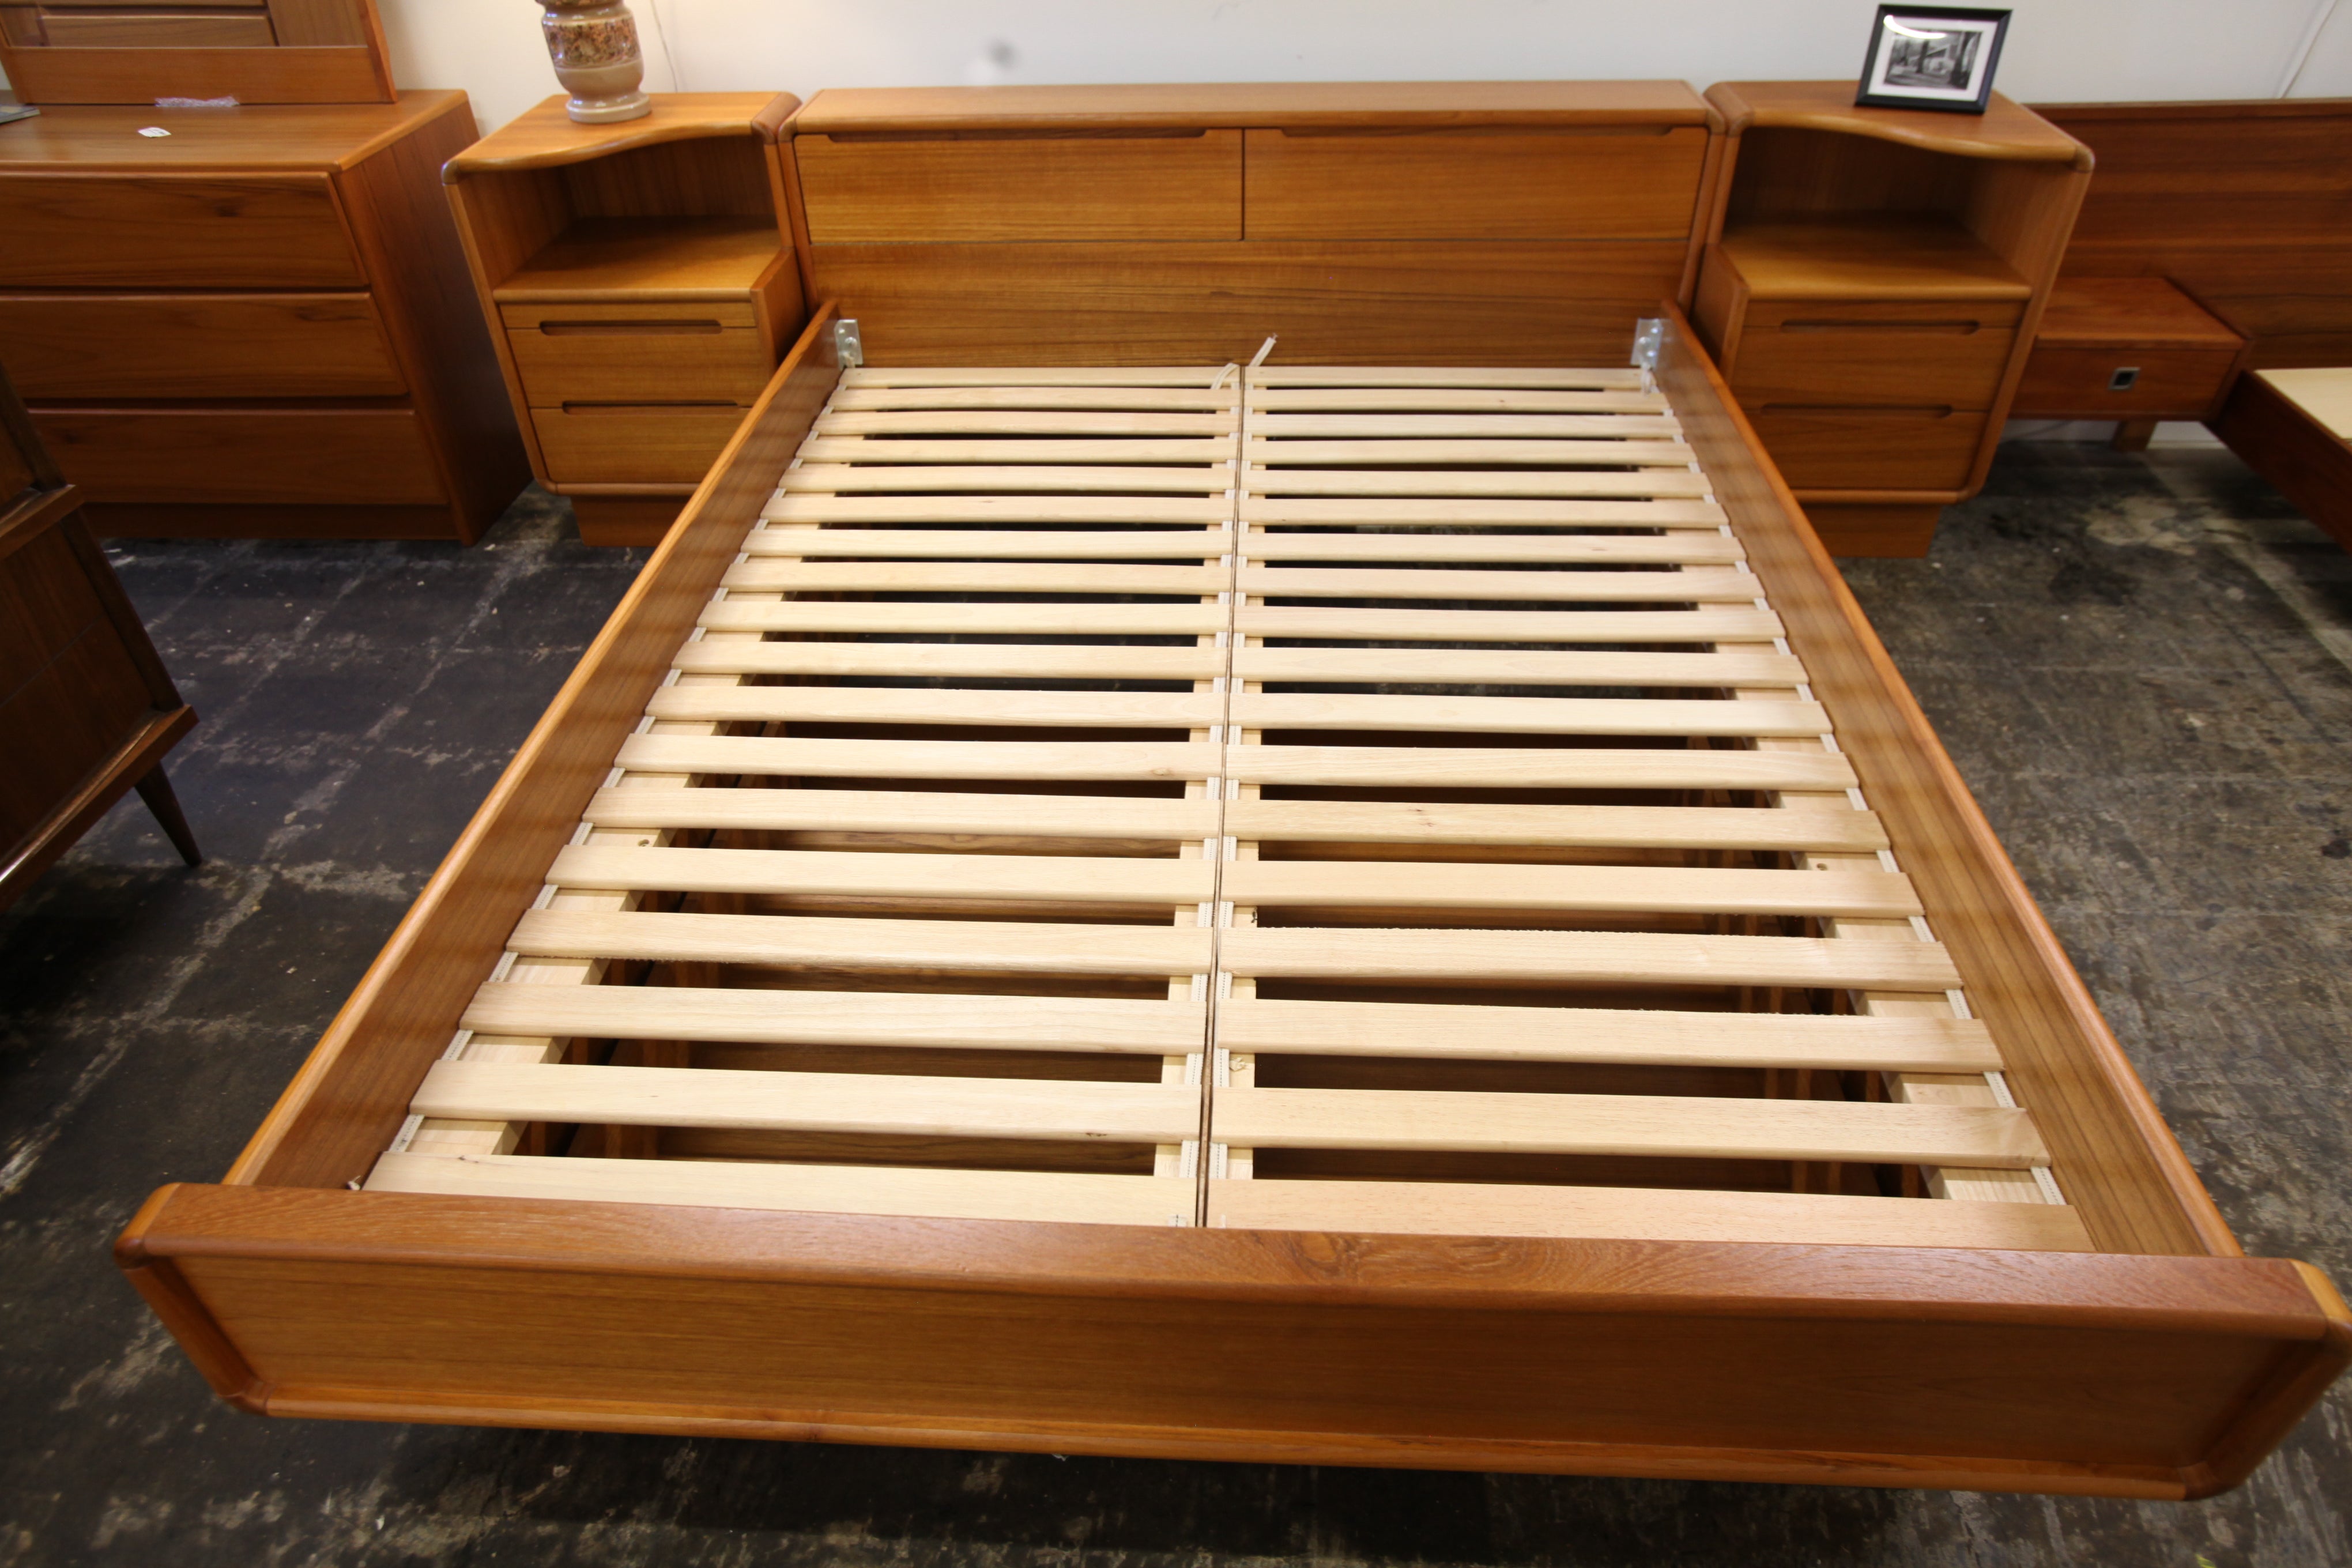 Vintage Teak Queen Bed w/ Storage & Night Stands (106.5"W x 30"H x 91"D)